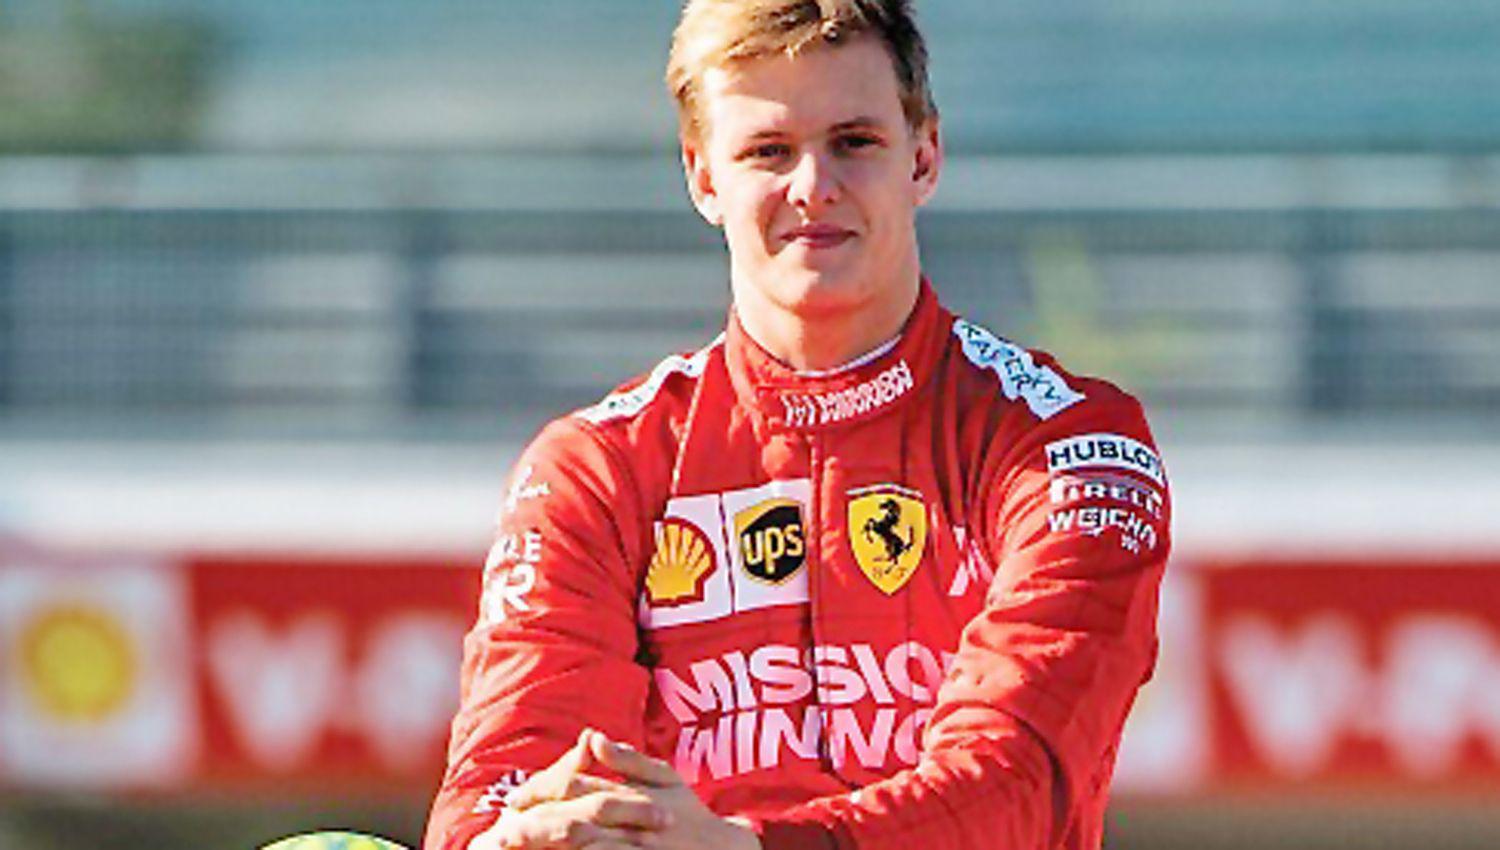 Mick contó que manejó la Ferrari 2004 con la cual su padre fue campeón Se tiene fe para llegar a la F-1